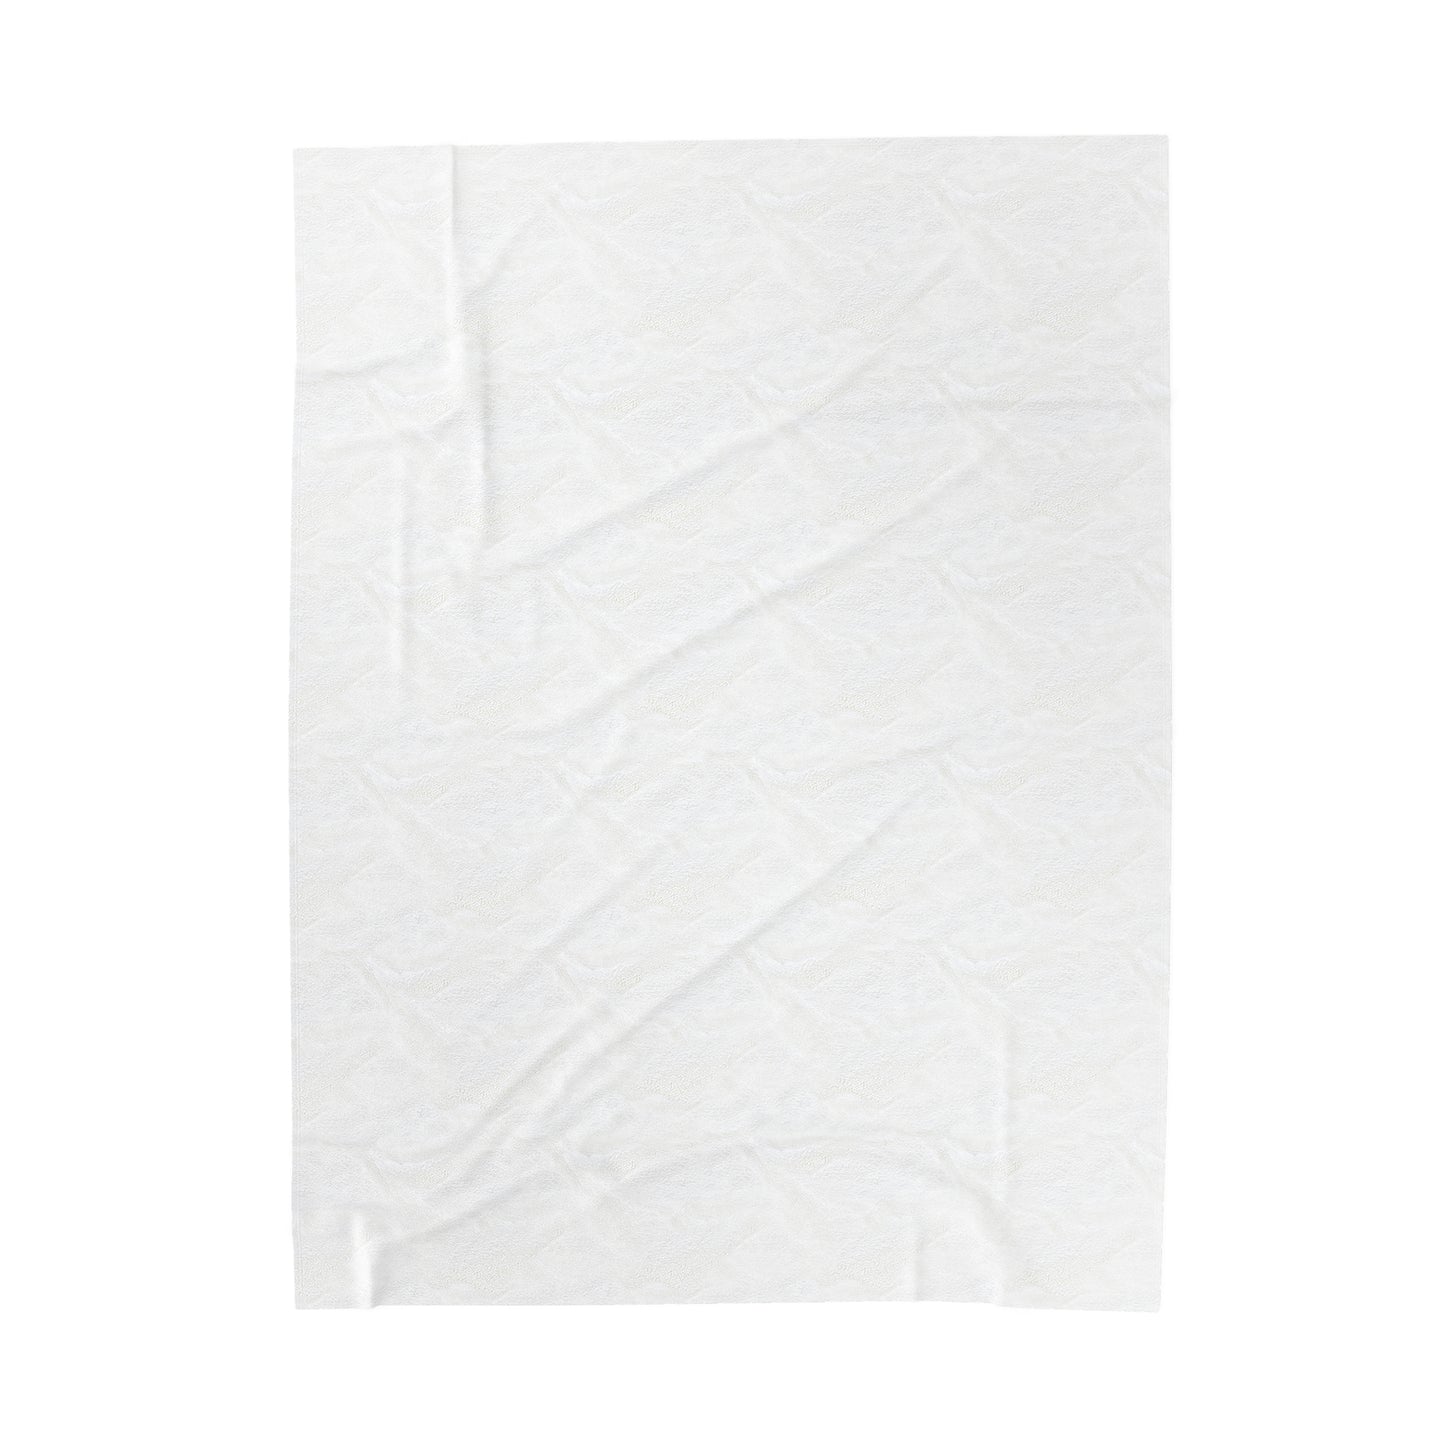 Christmas Pattern Blanket | Velveteen Plush Blanket | 2 sizes available